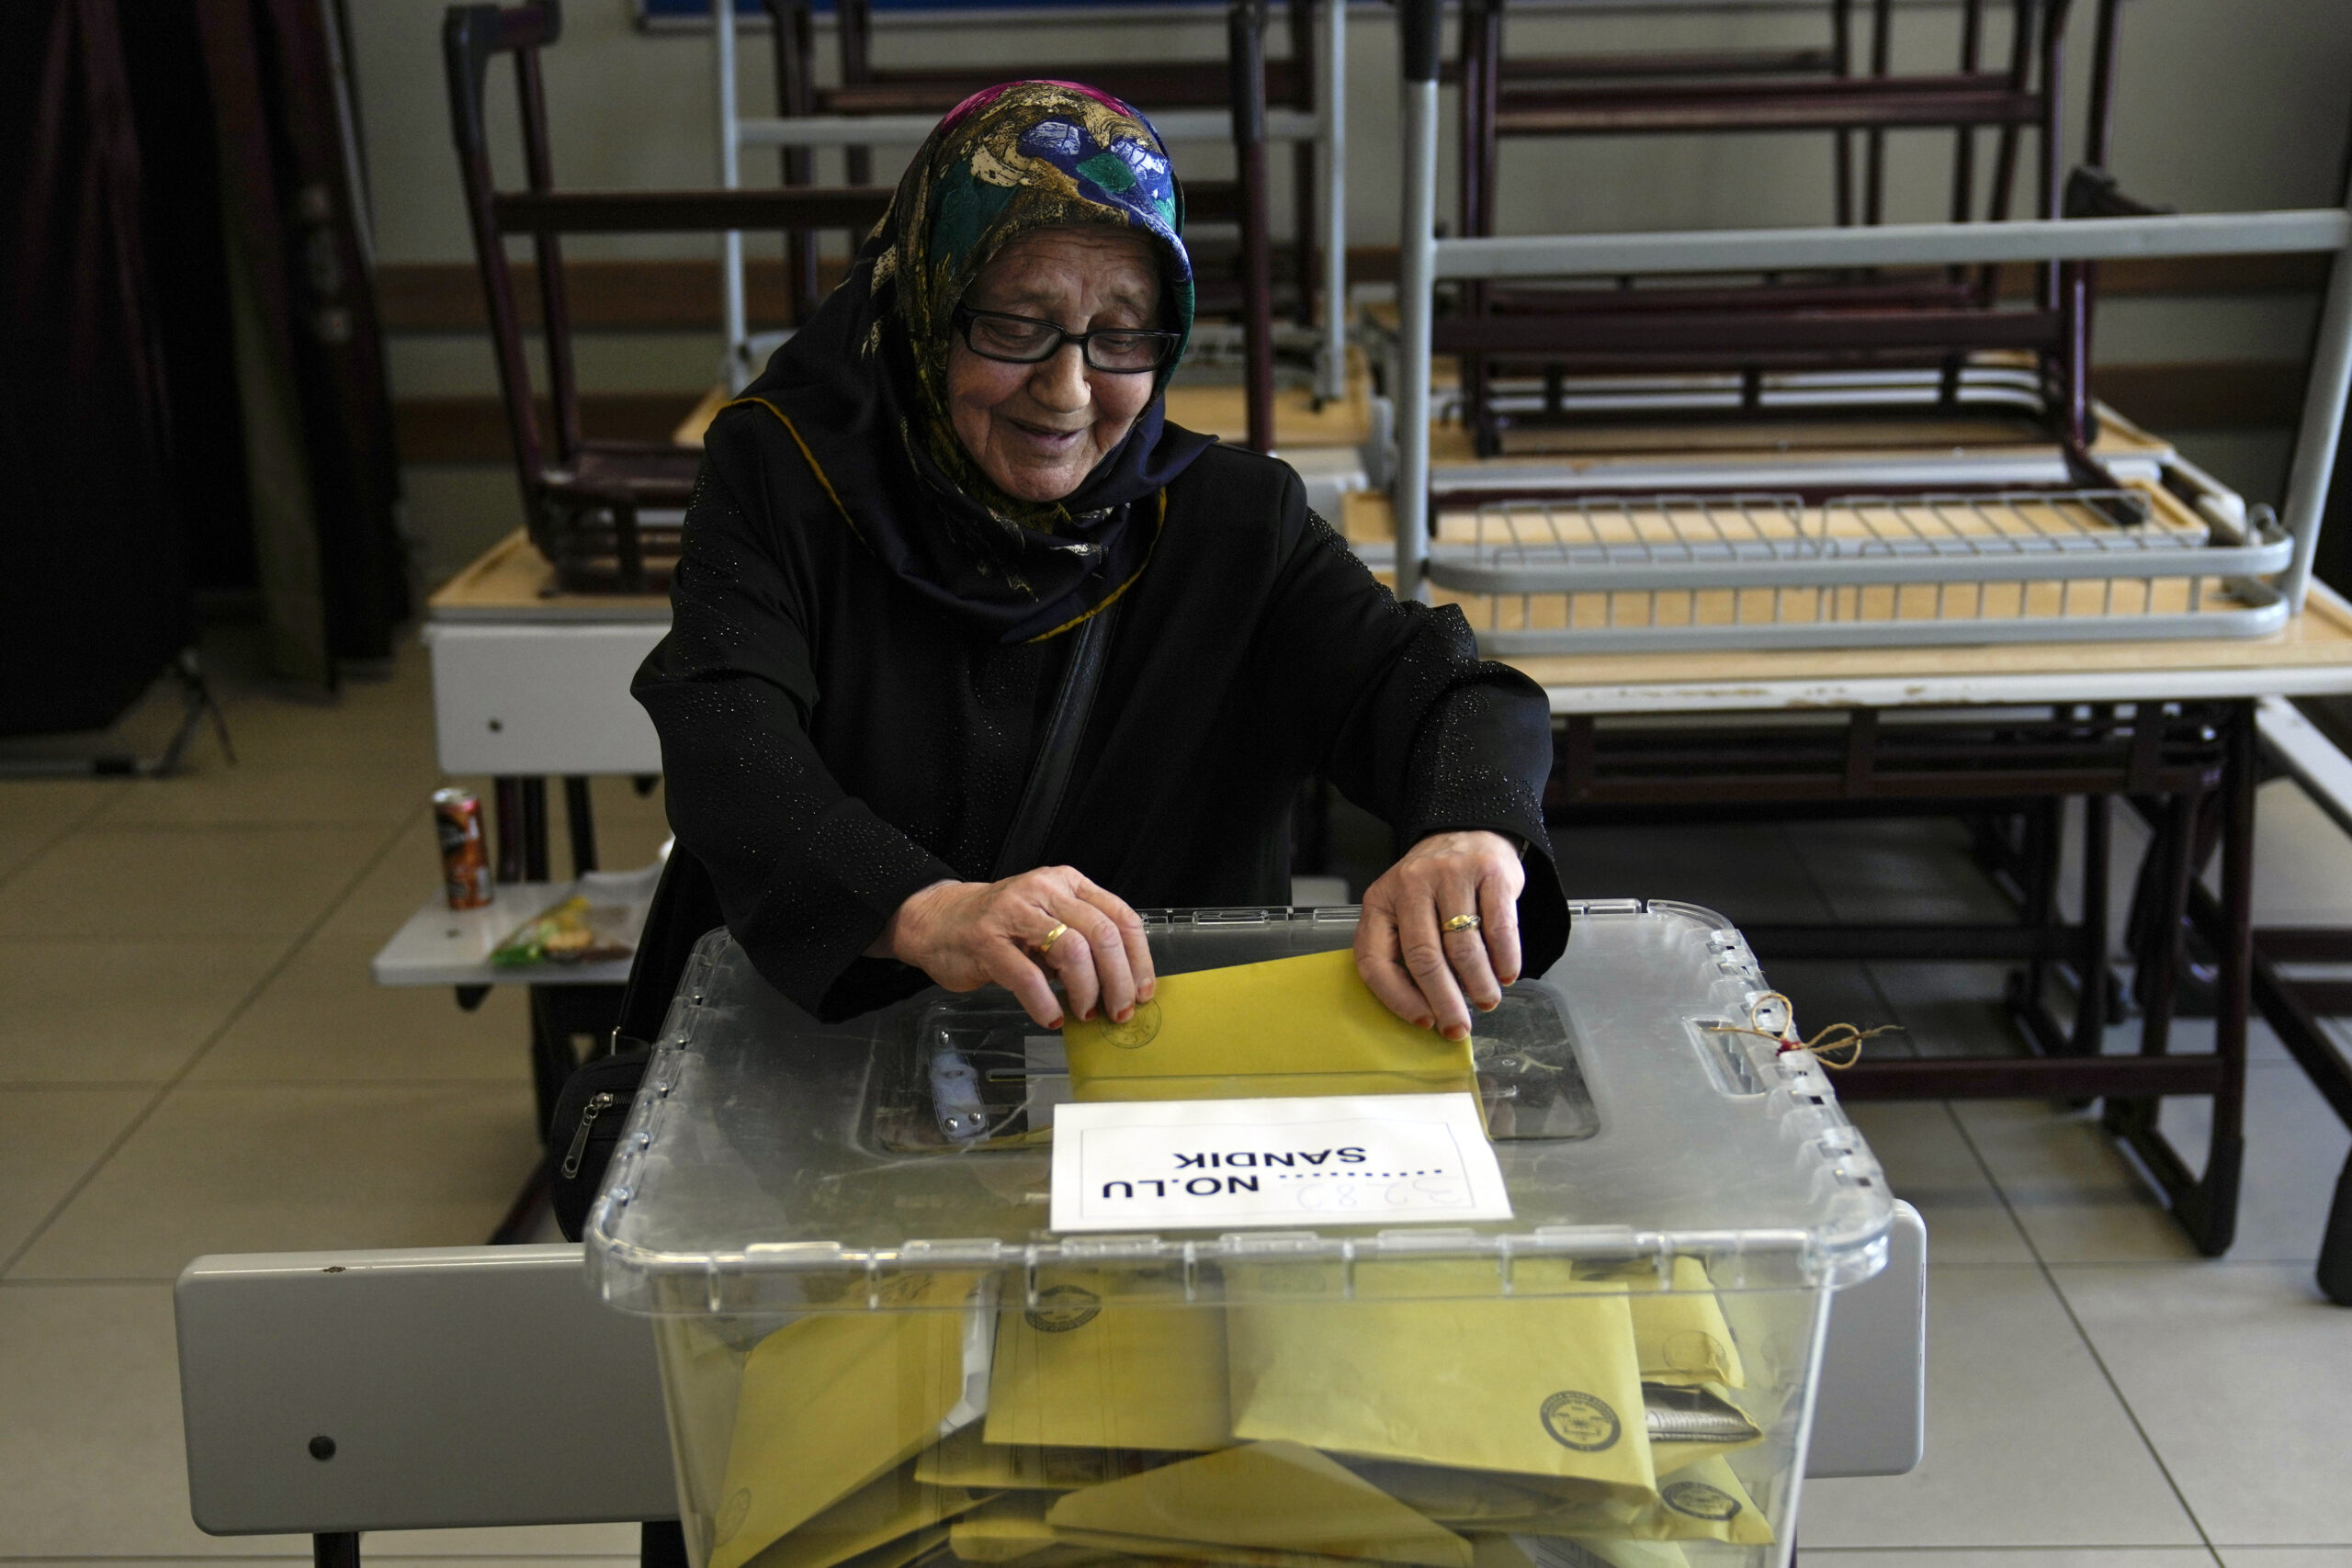 Εκλογές στην Τουρκία: Στην Άγκυρα ο Ερντογάν – Ετοιμάζουν το μπαλκόνι όπου θα εκφωνήσει τον νικητήριο λόγο